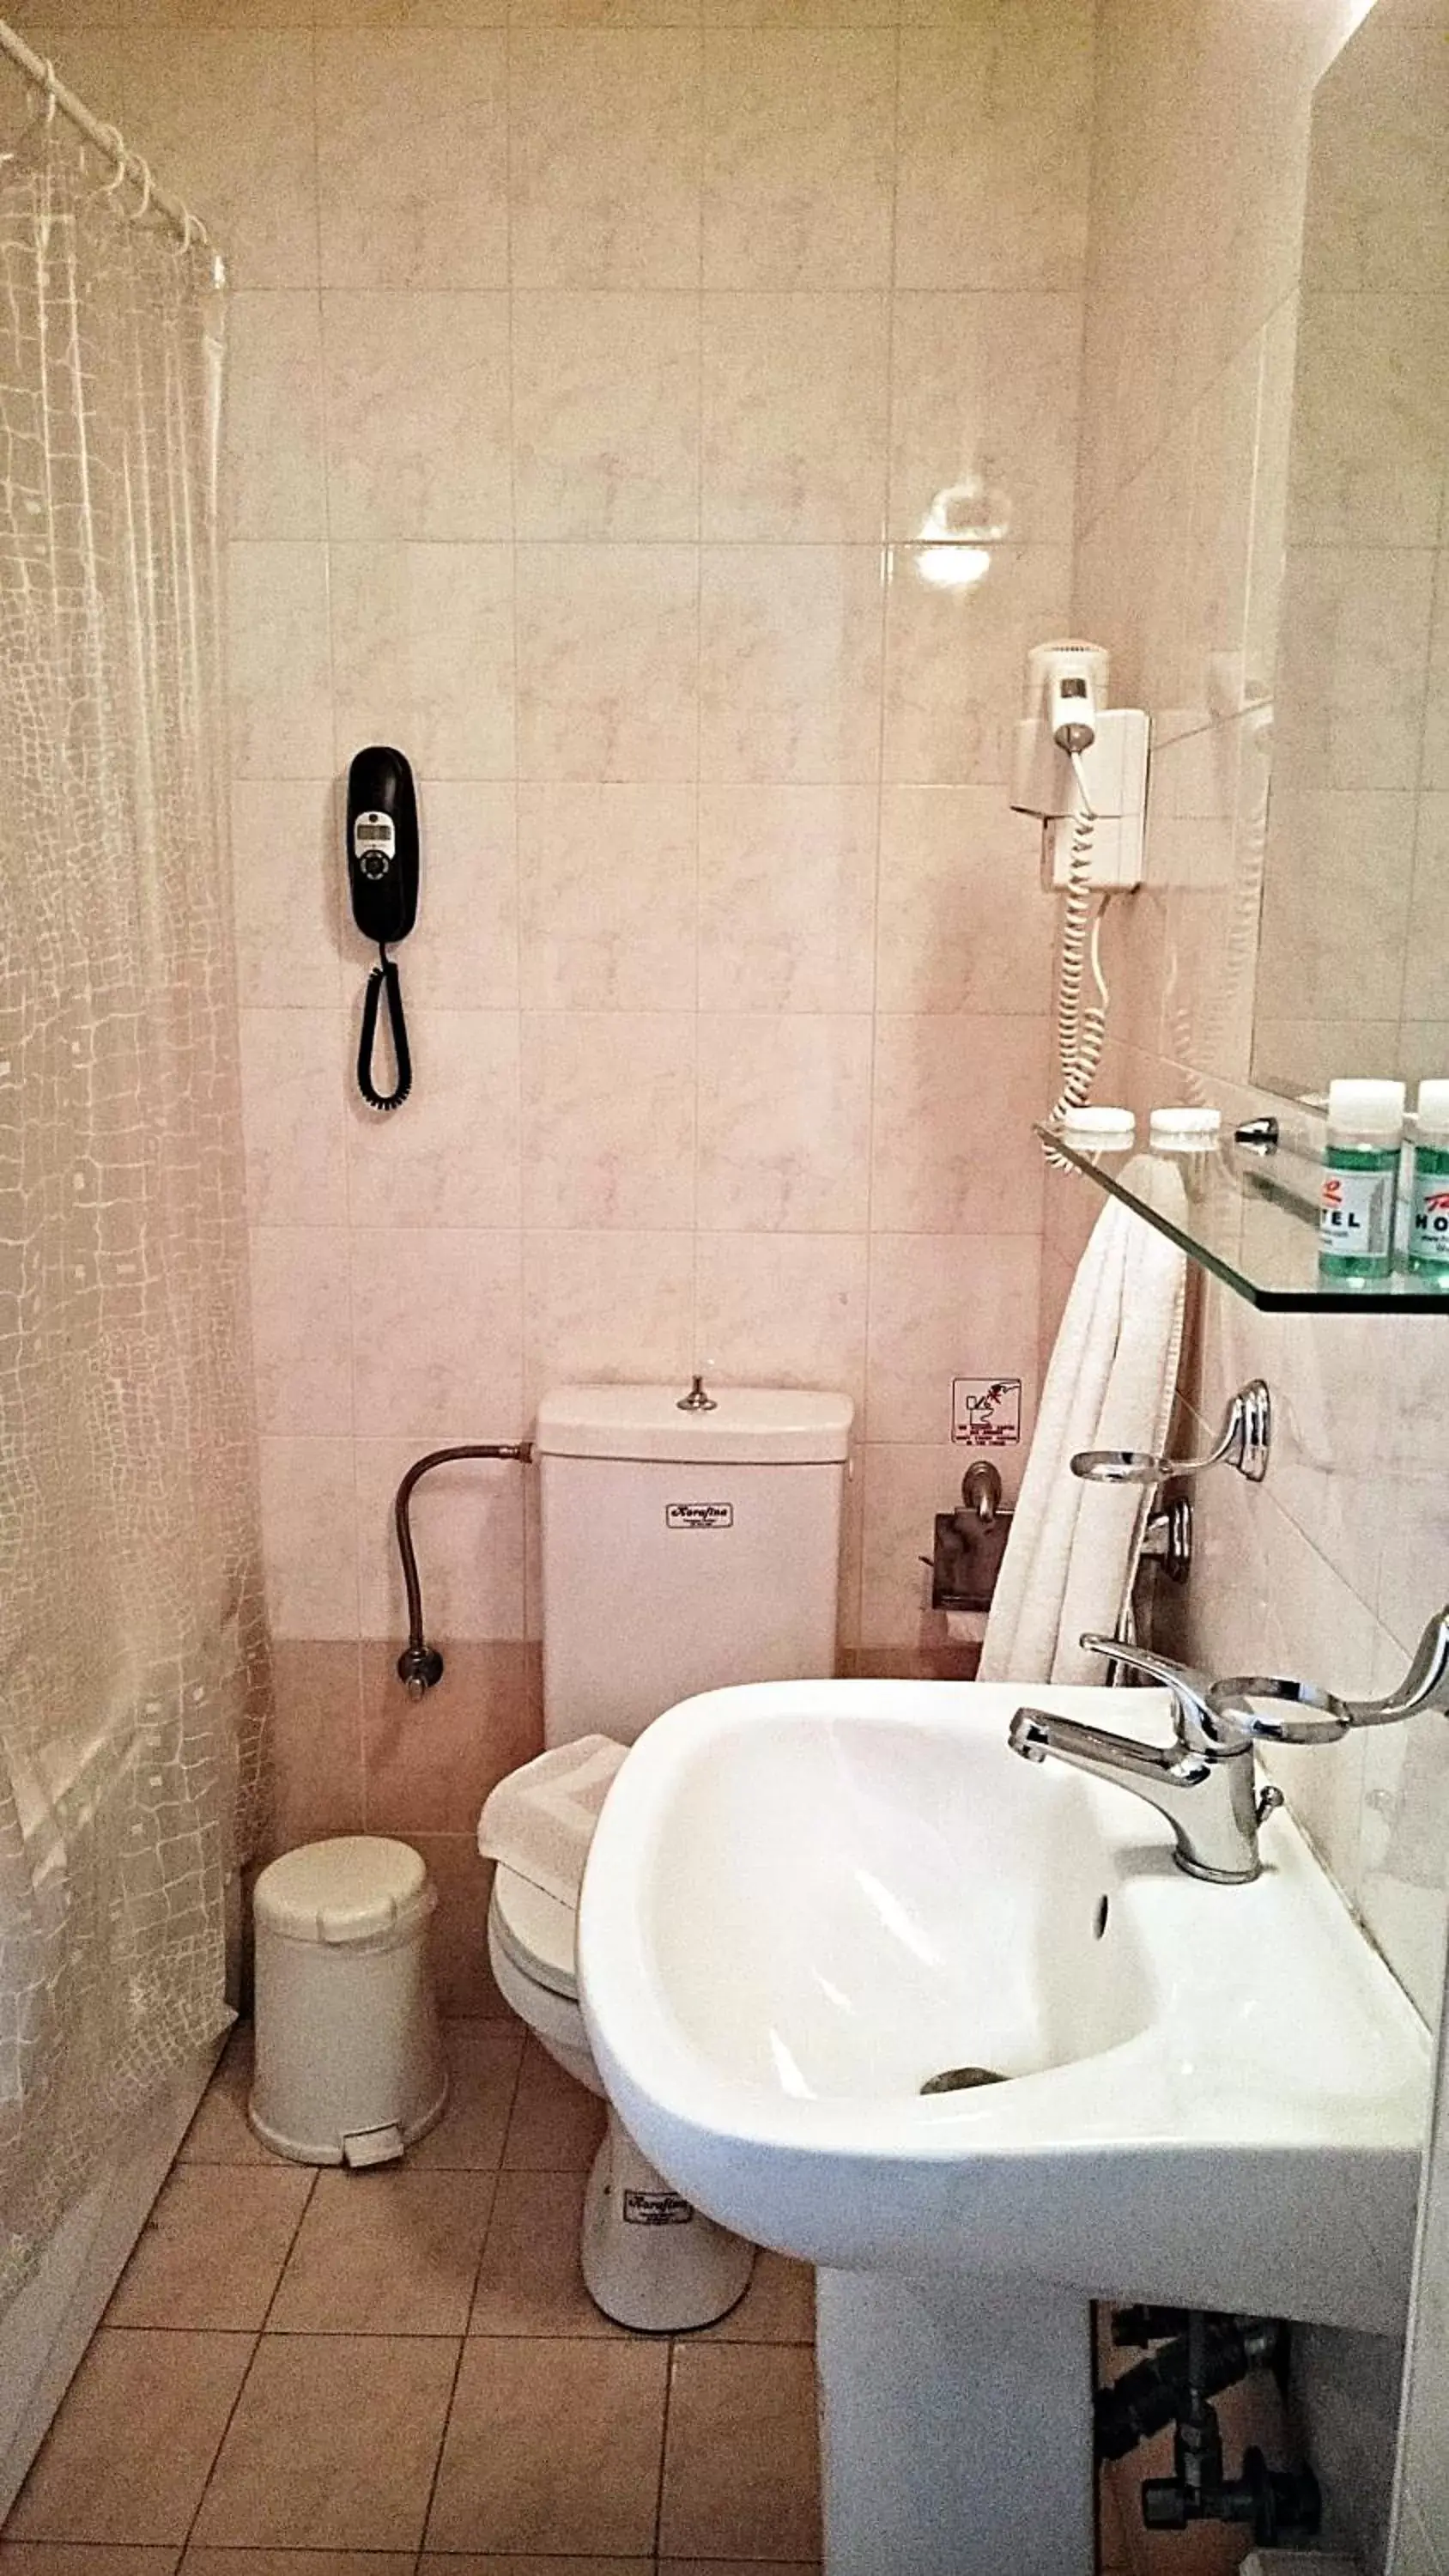 Bathroom in Hotel Rio Athens